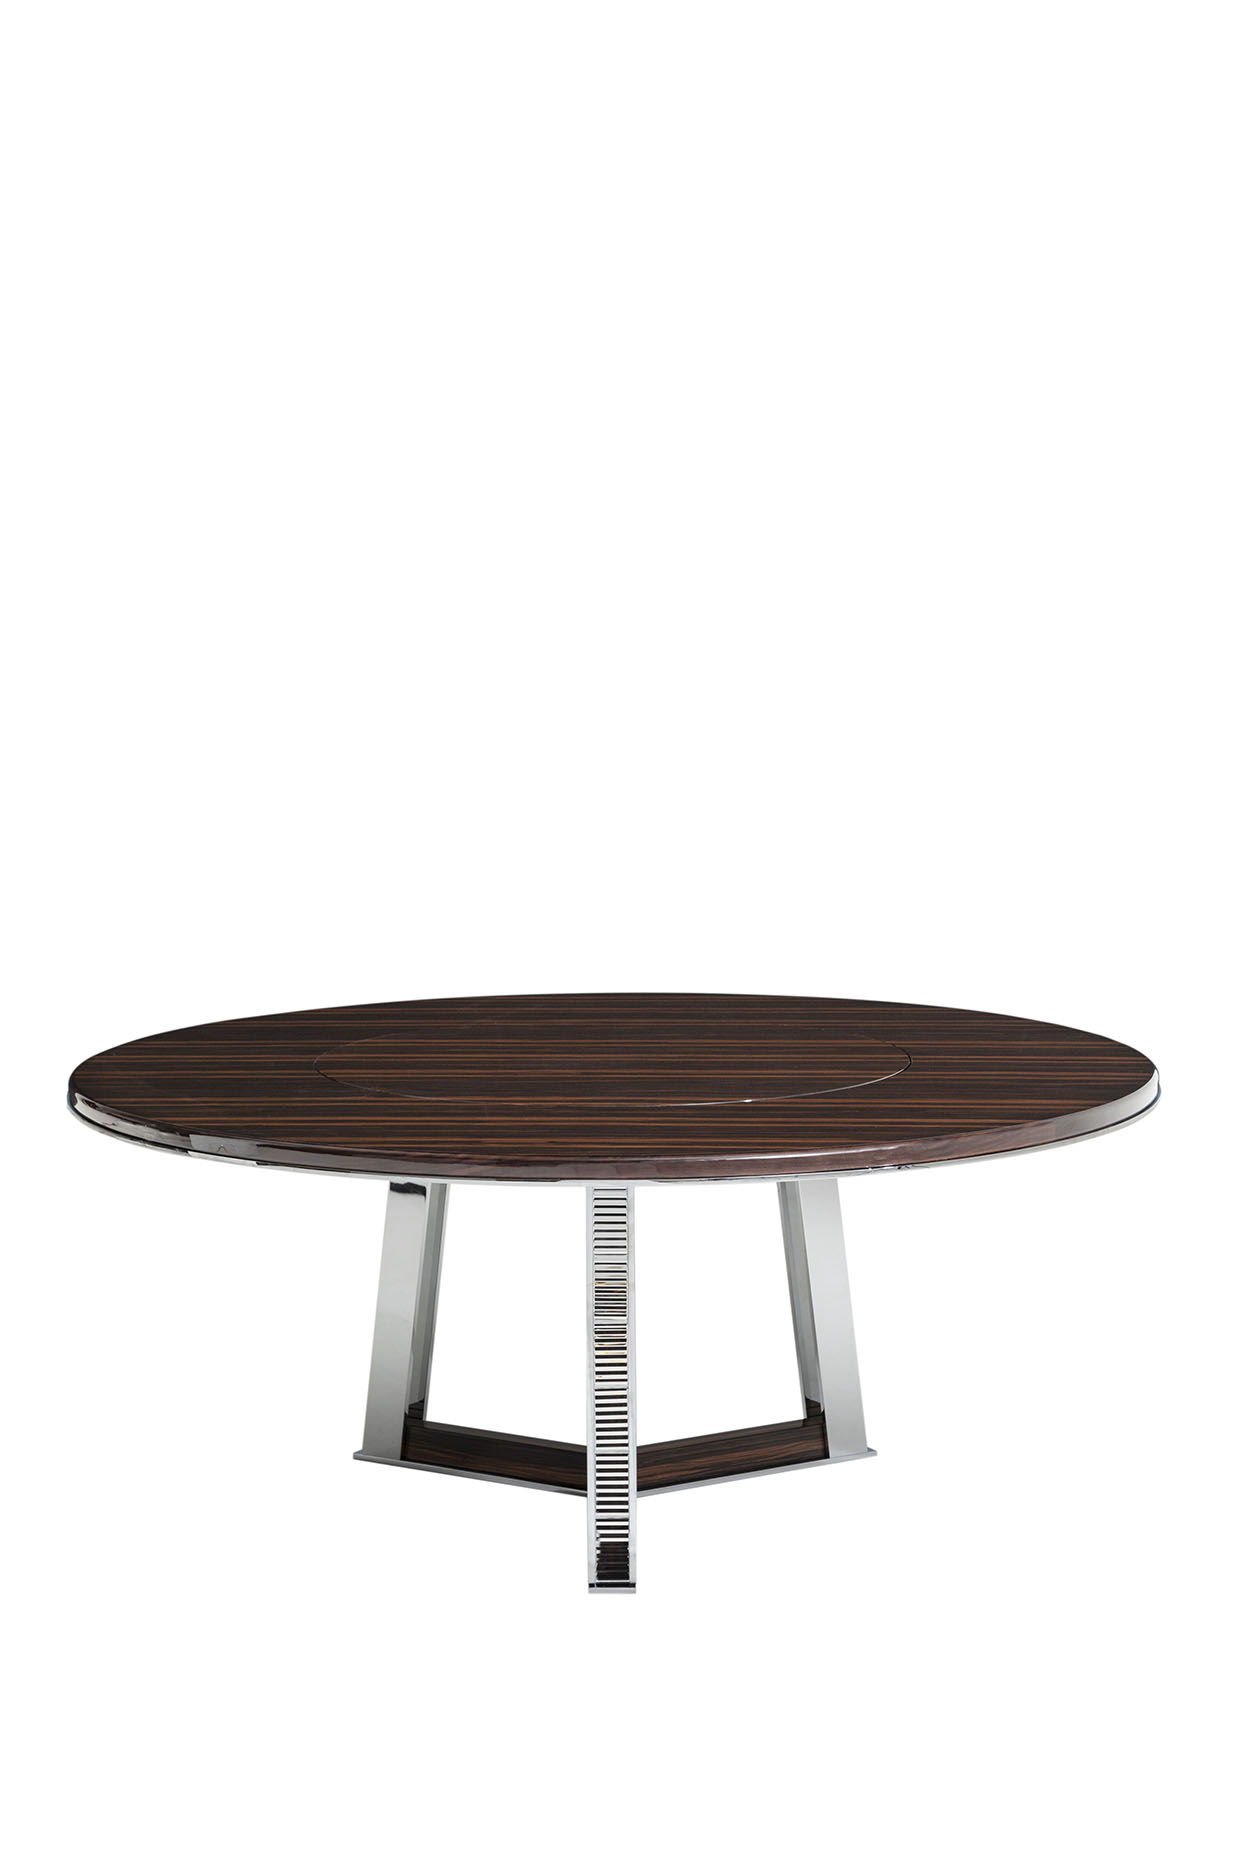 Стол обеденный ECLAT TABLE, дизайн Baccarat La Maison